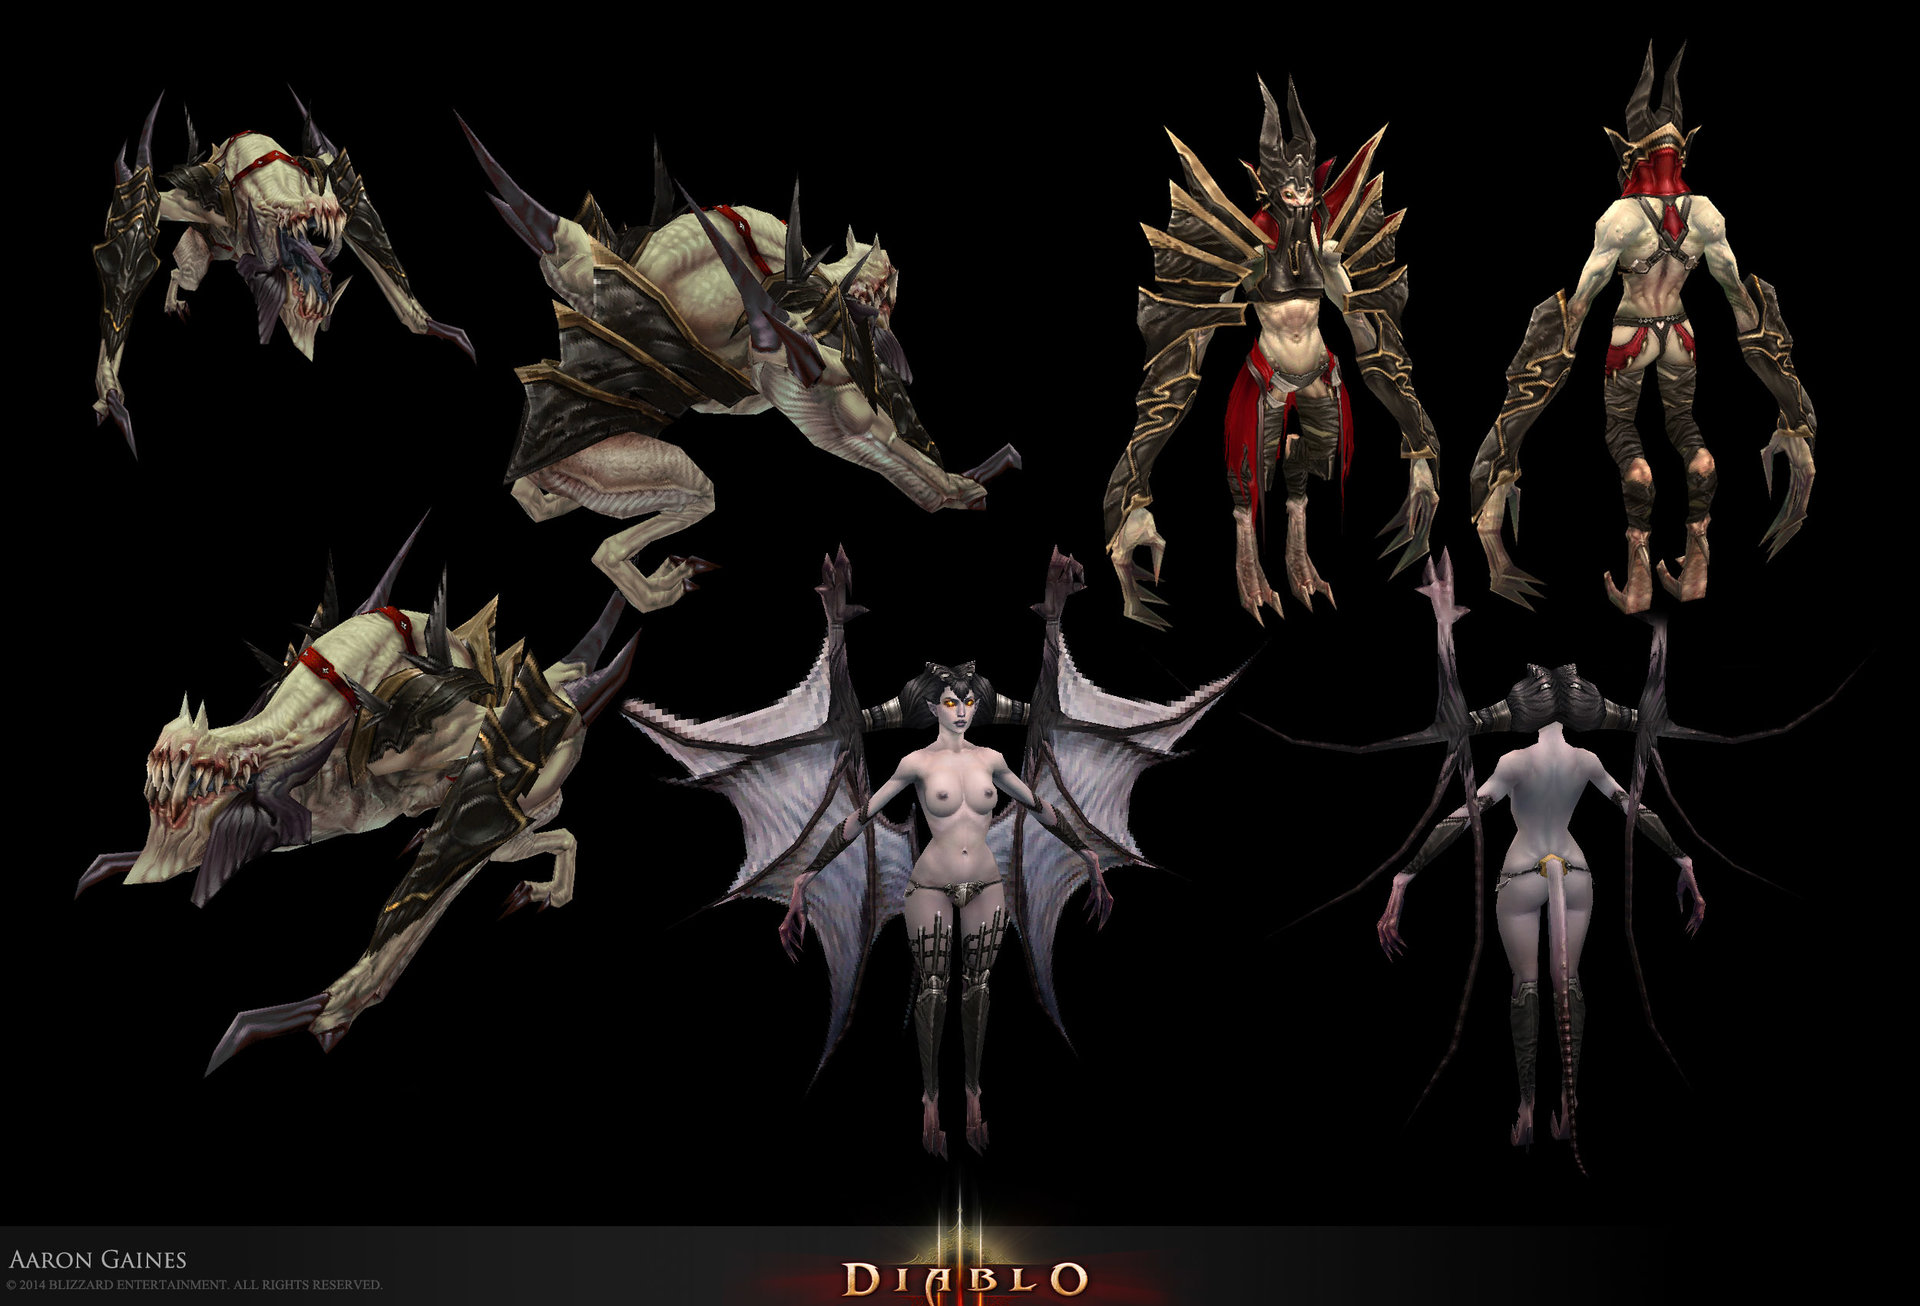 Diablo 3 succubus item